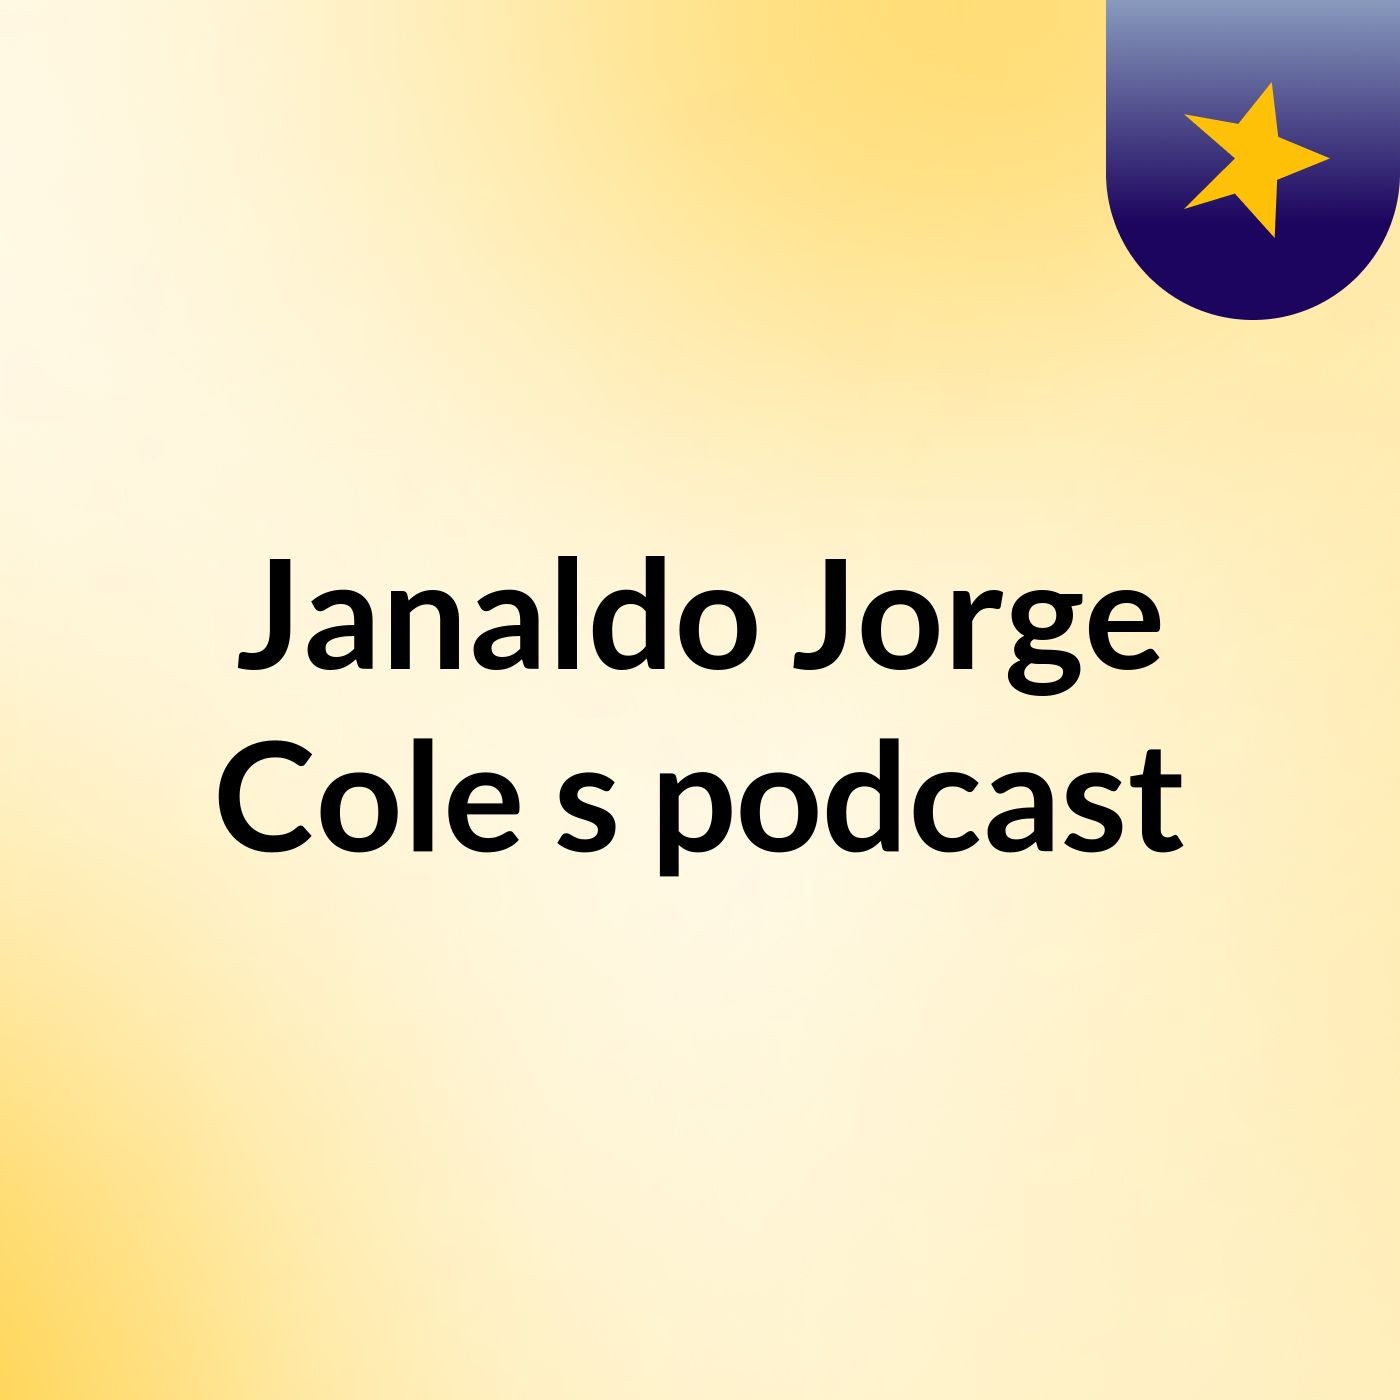 Janaldo Jorge Cole's podcast